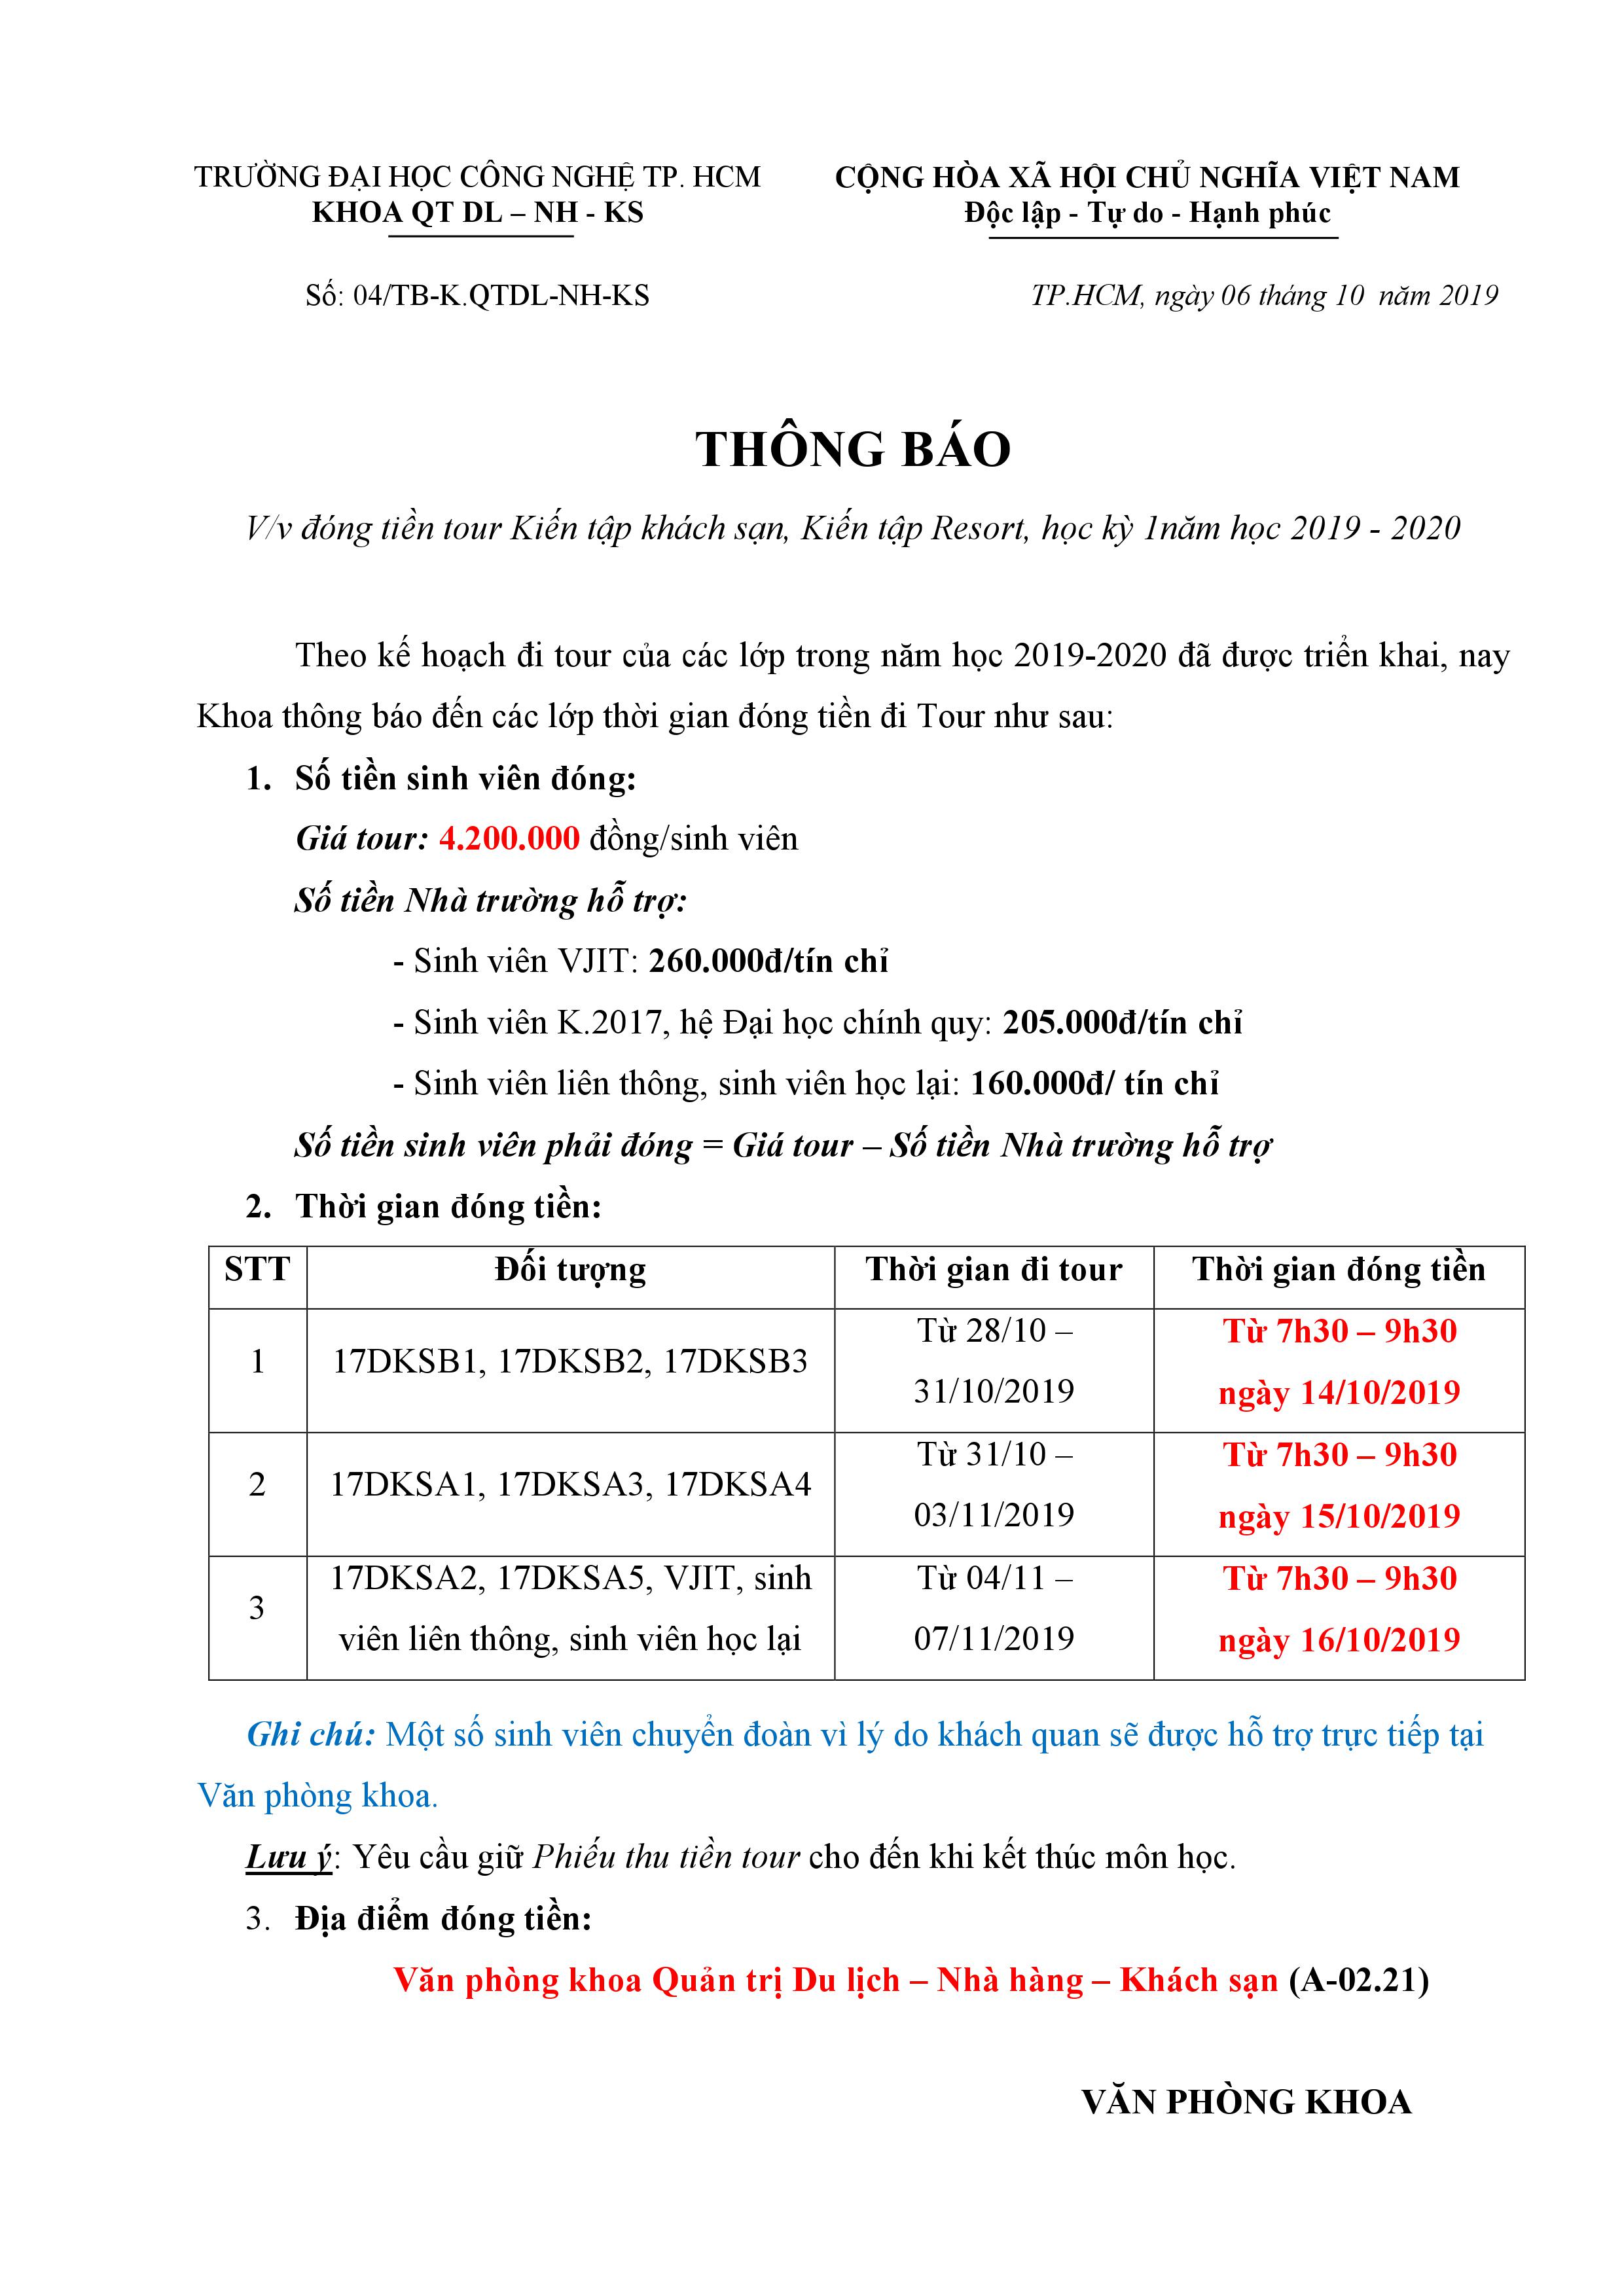 Thông báo đóng tiền tour Kiến tập khách sạn, Kiến tập Resort, học kỳ 1 NH 2019 - 2020 2